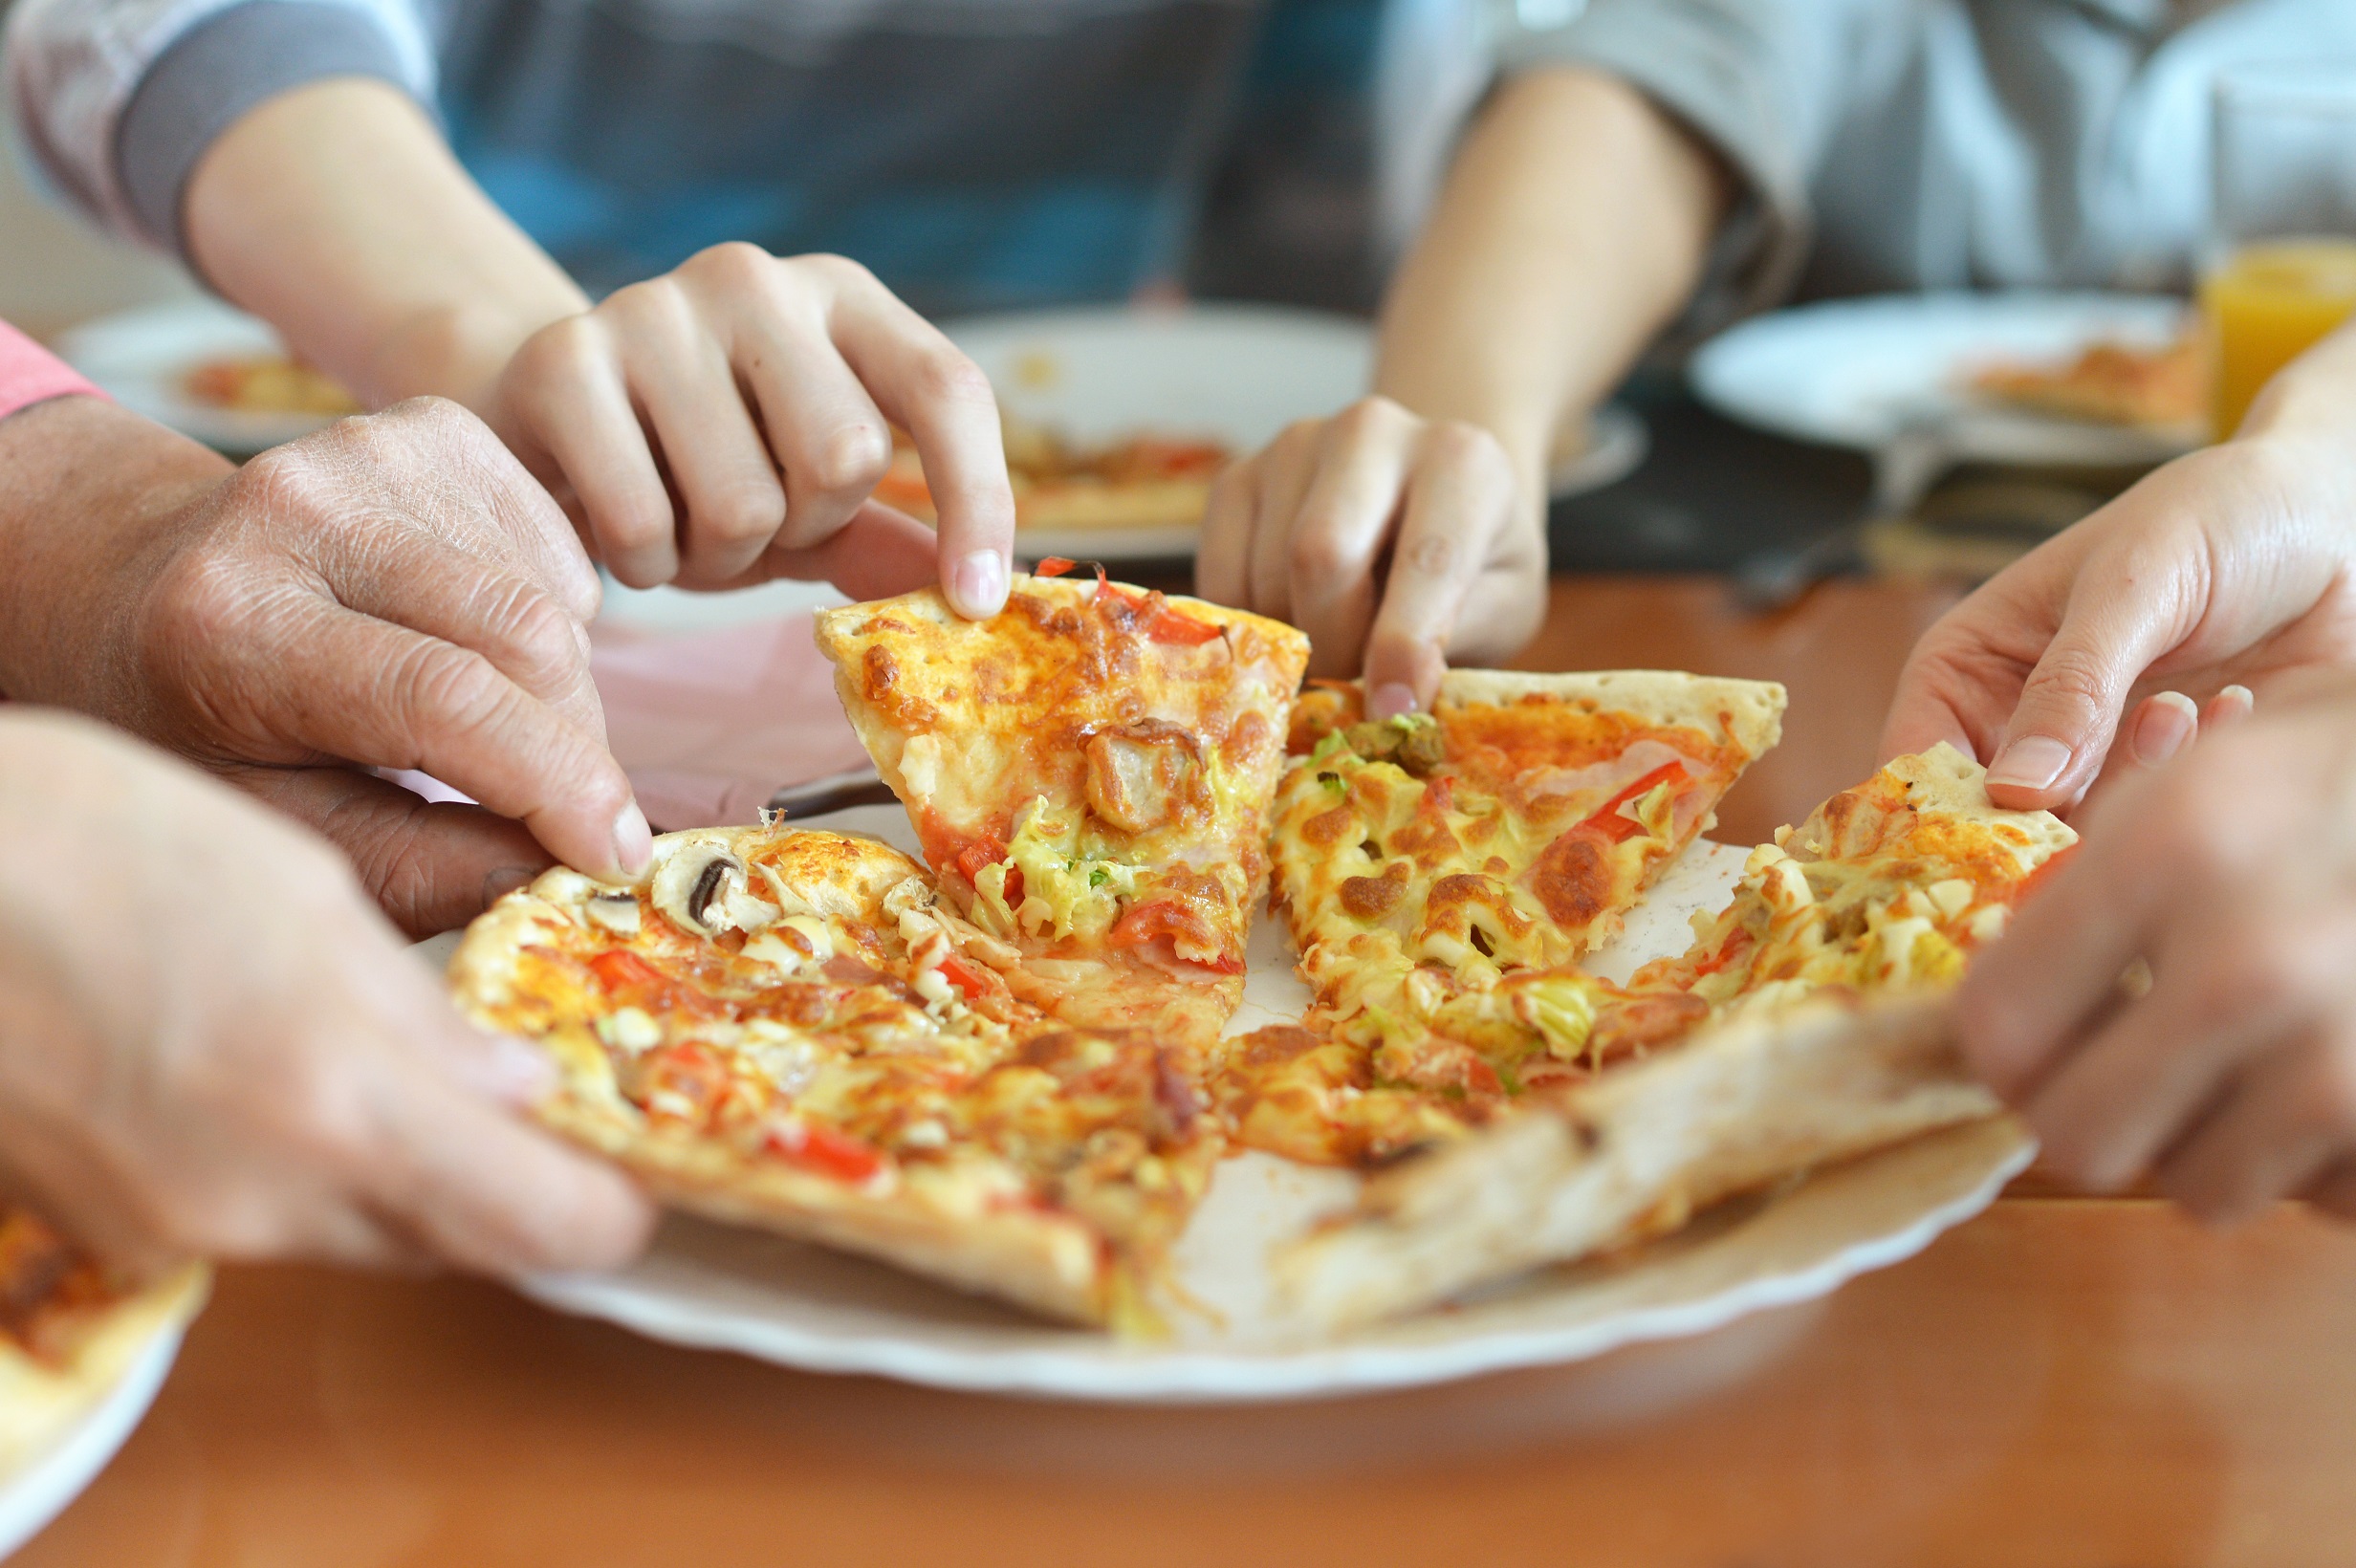 Что будет есть съесть сырое тесто. "Пицца". Пицца в руке. Кушать пиццу. Руки берут пиццу.